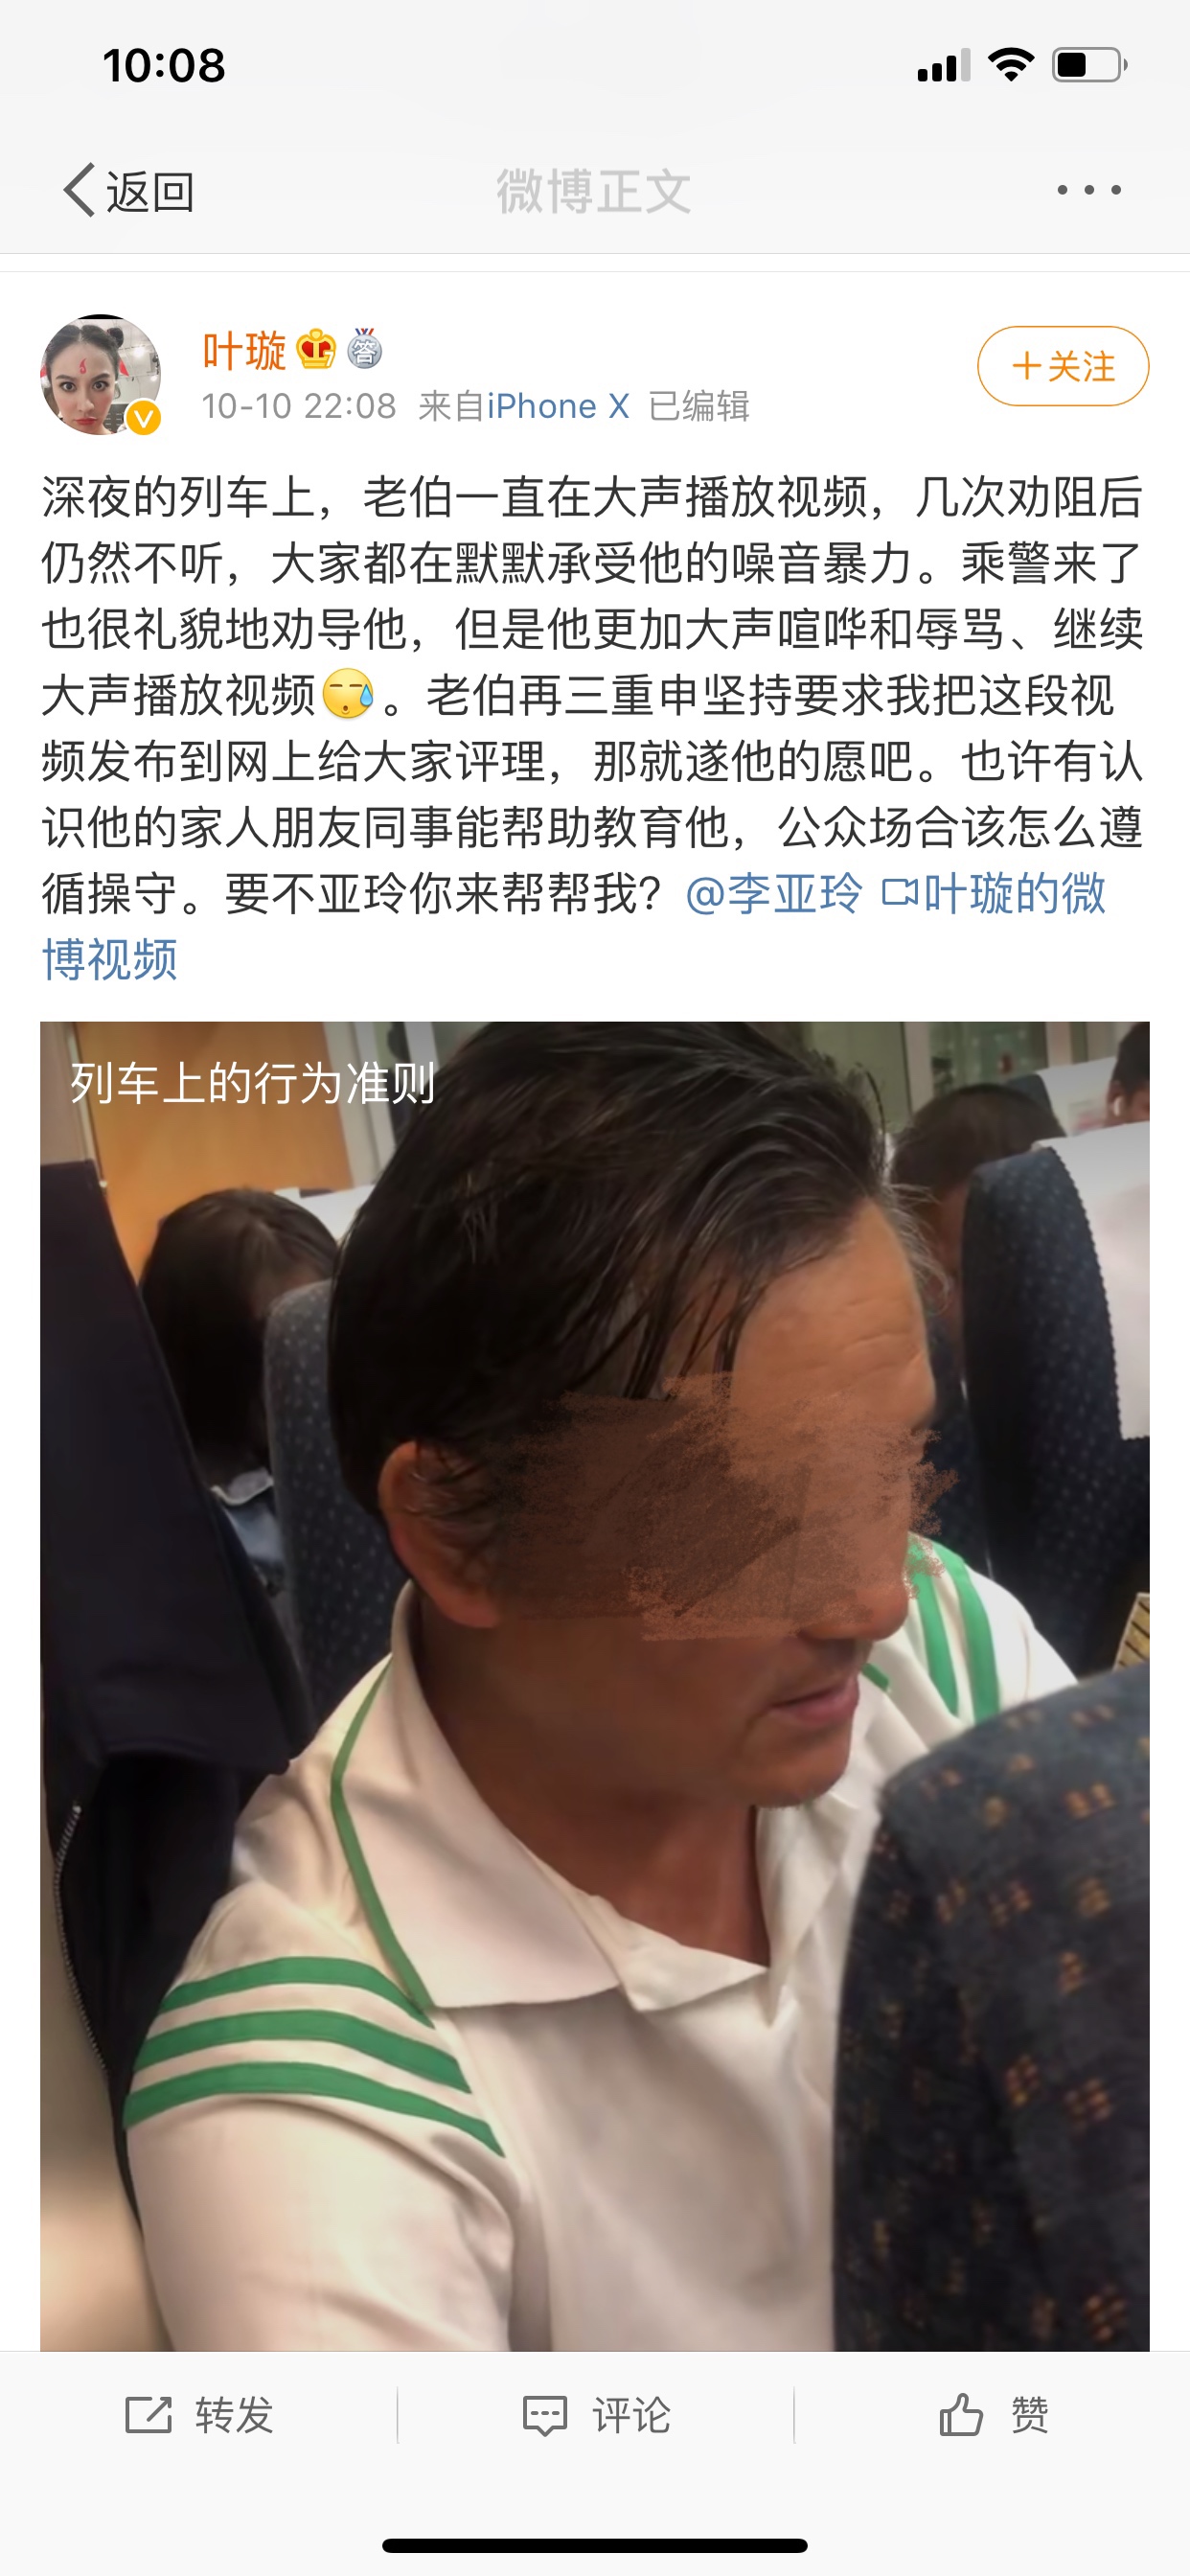 演员叶璇高铁阻止“外放族”被怼12306称将加强工作